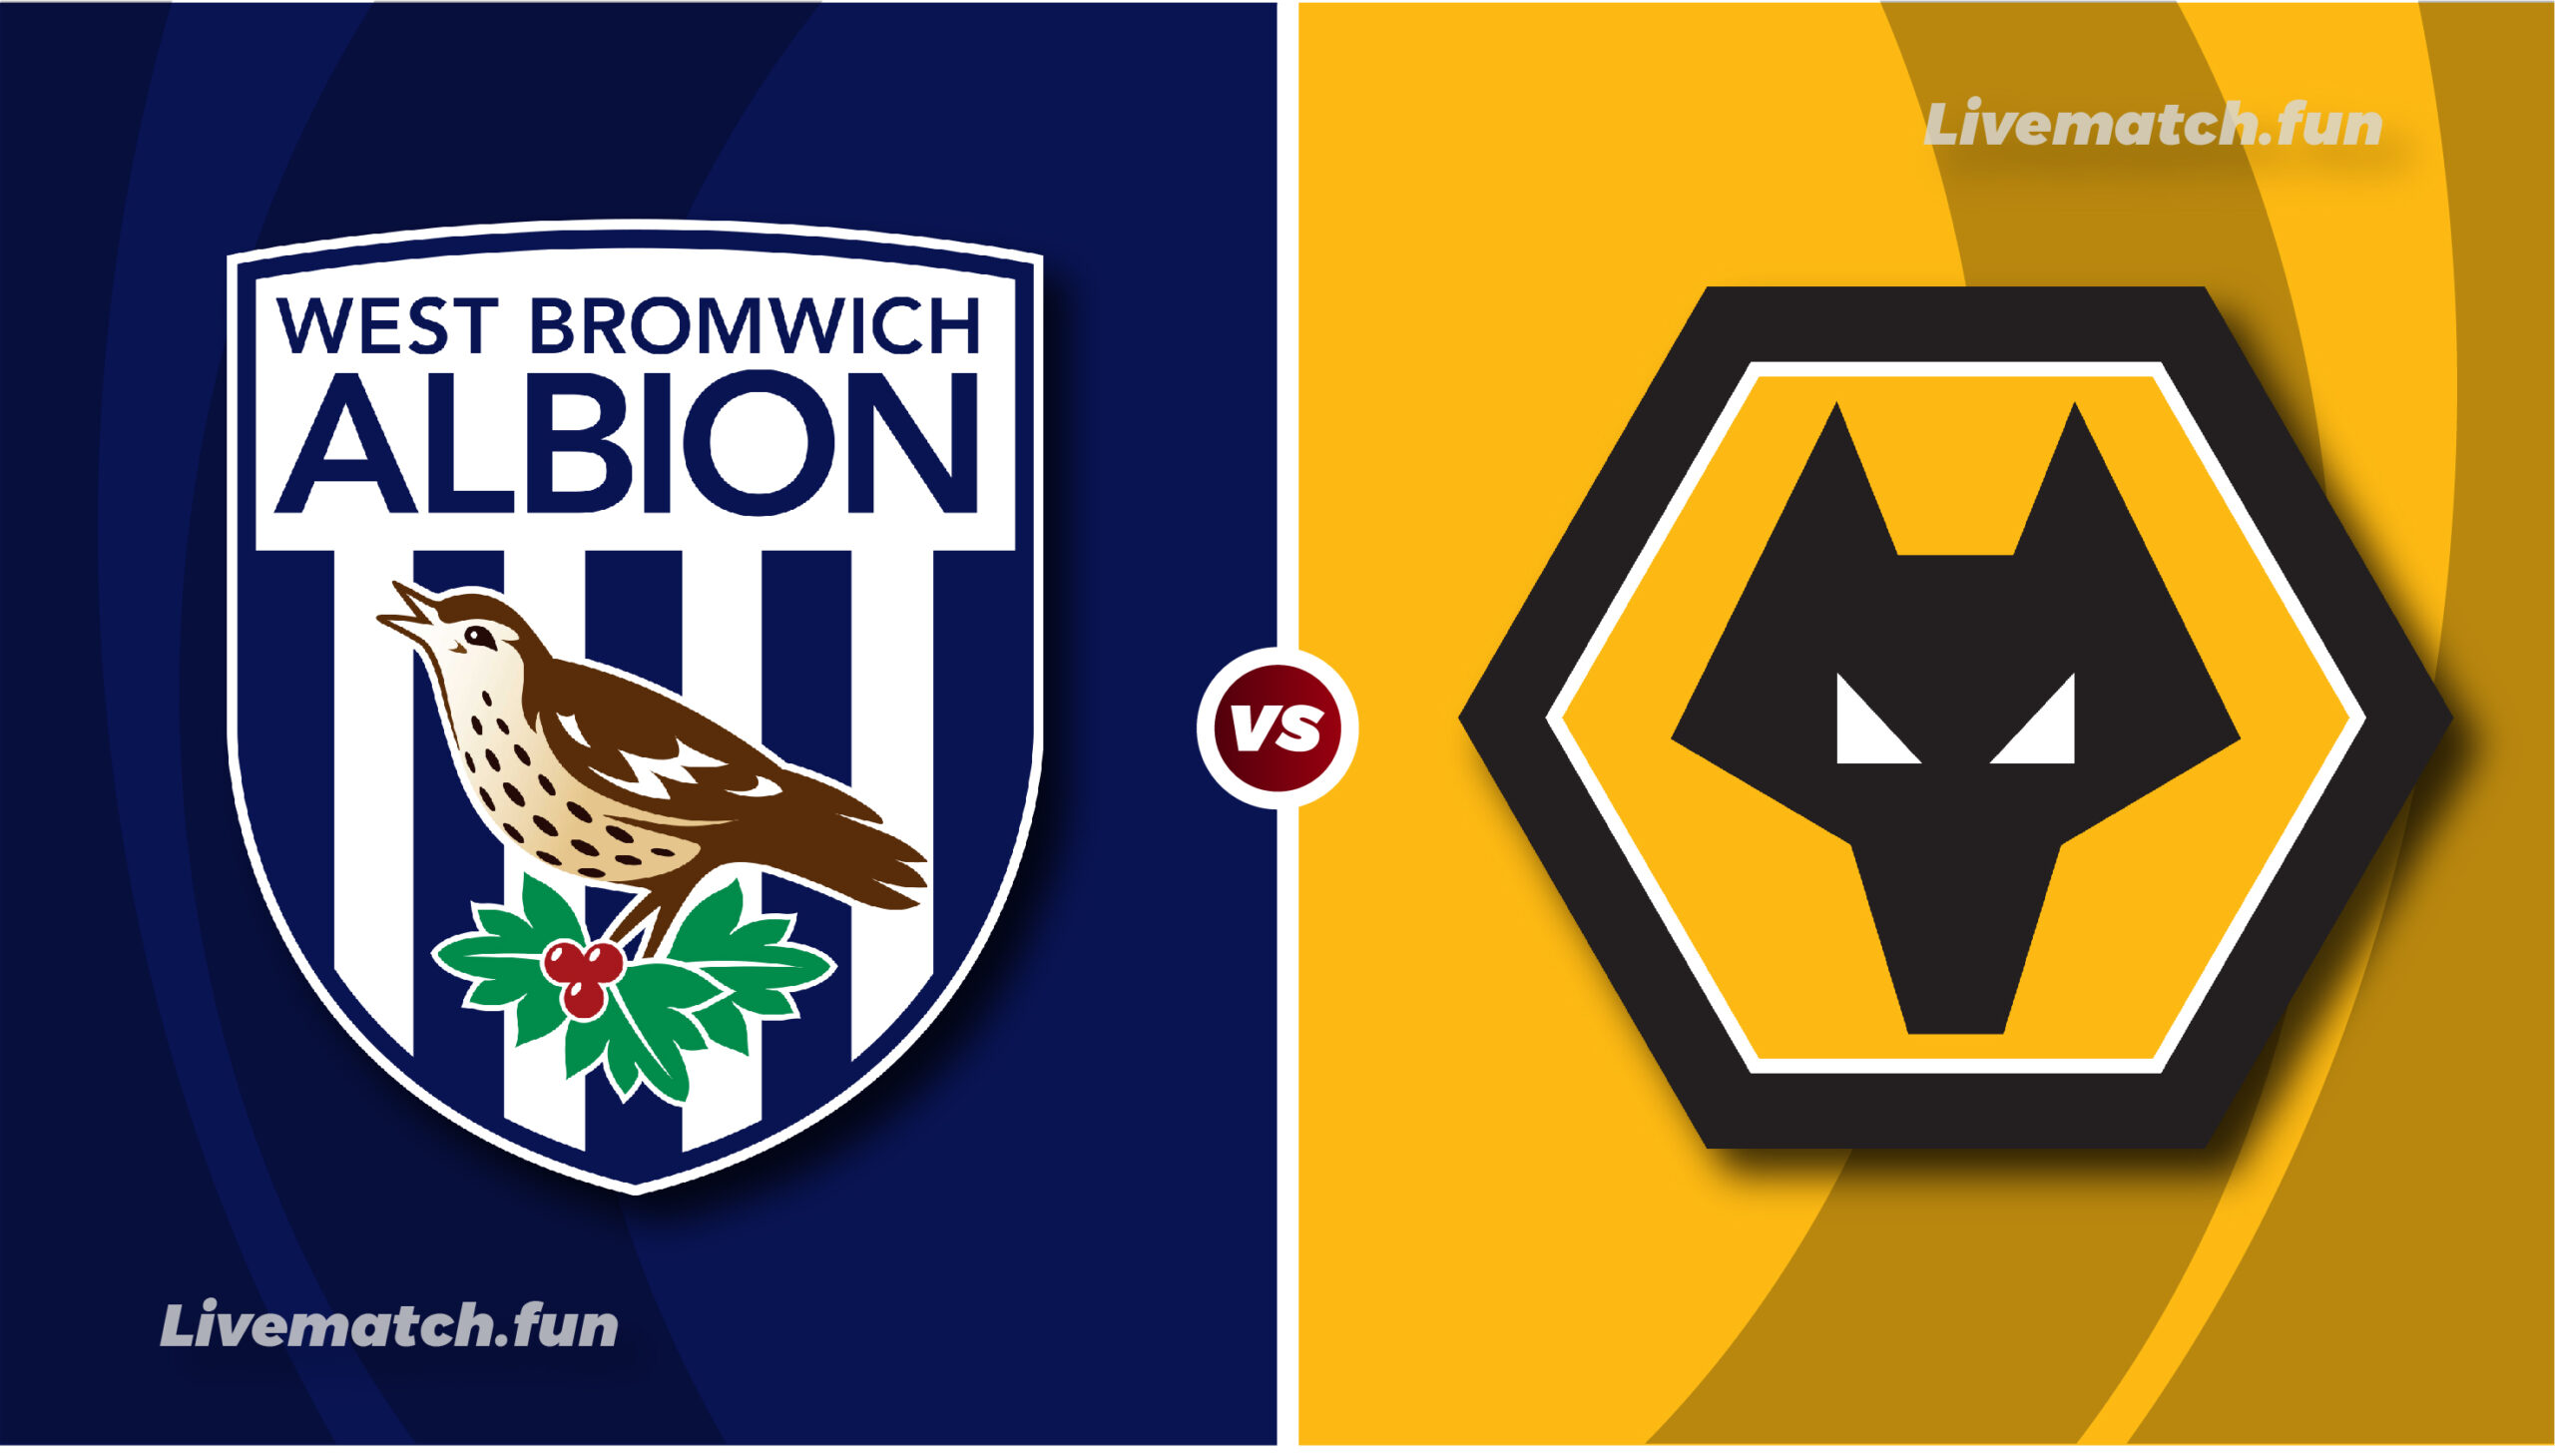 West Bromwich Albion vs Wolves